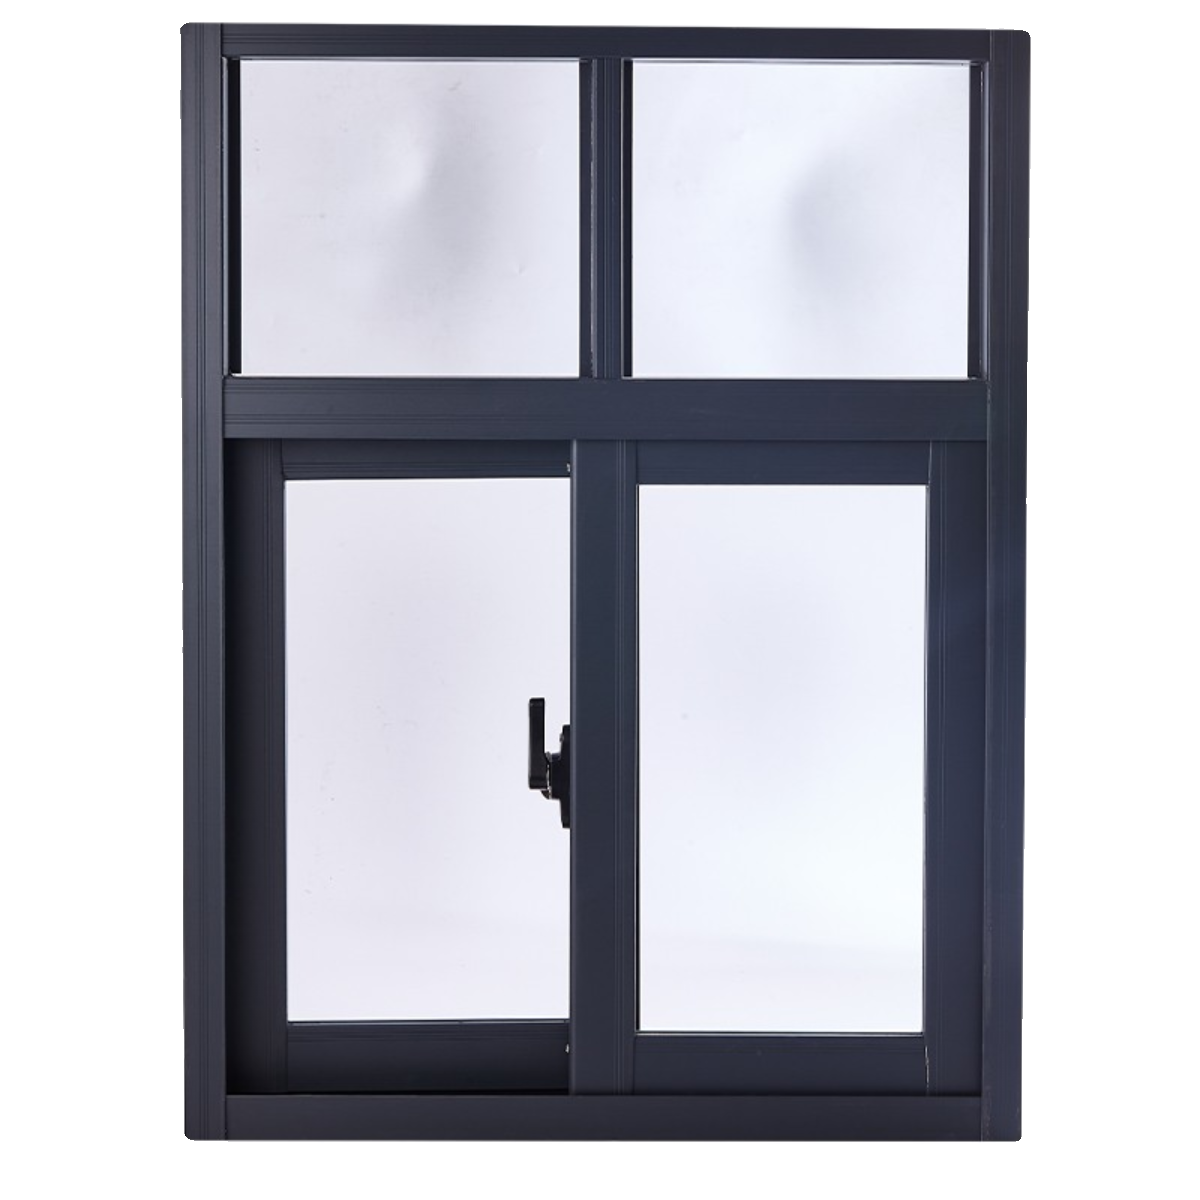 铝合金推拉窗农村定制左右简易小通风窗厕所窗厨房窗平移窗玻璃窗 - 图3